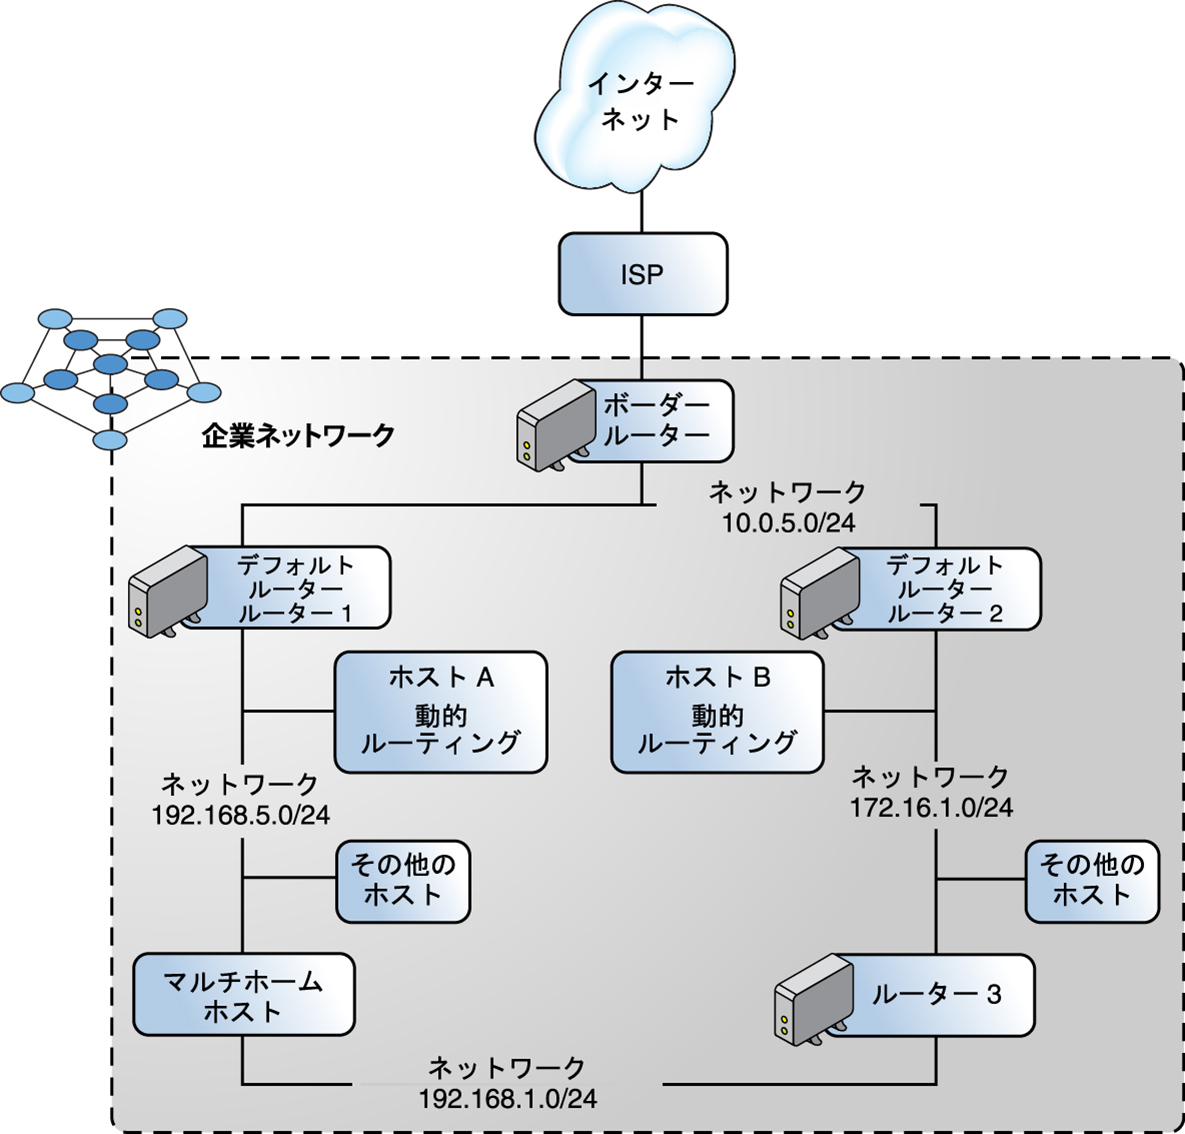 image:この図は、複数の IPv4 ルーター含む自律システムを示しています。